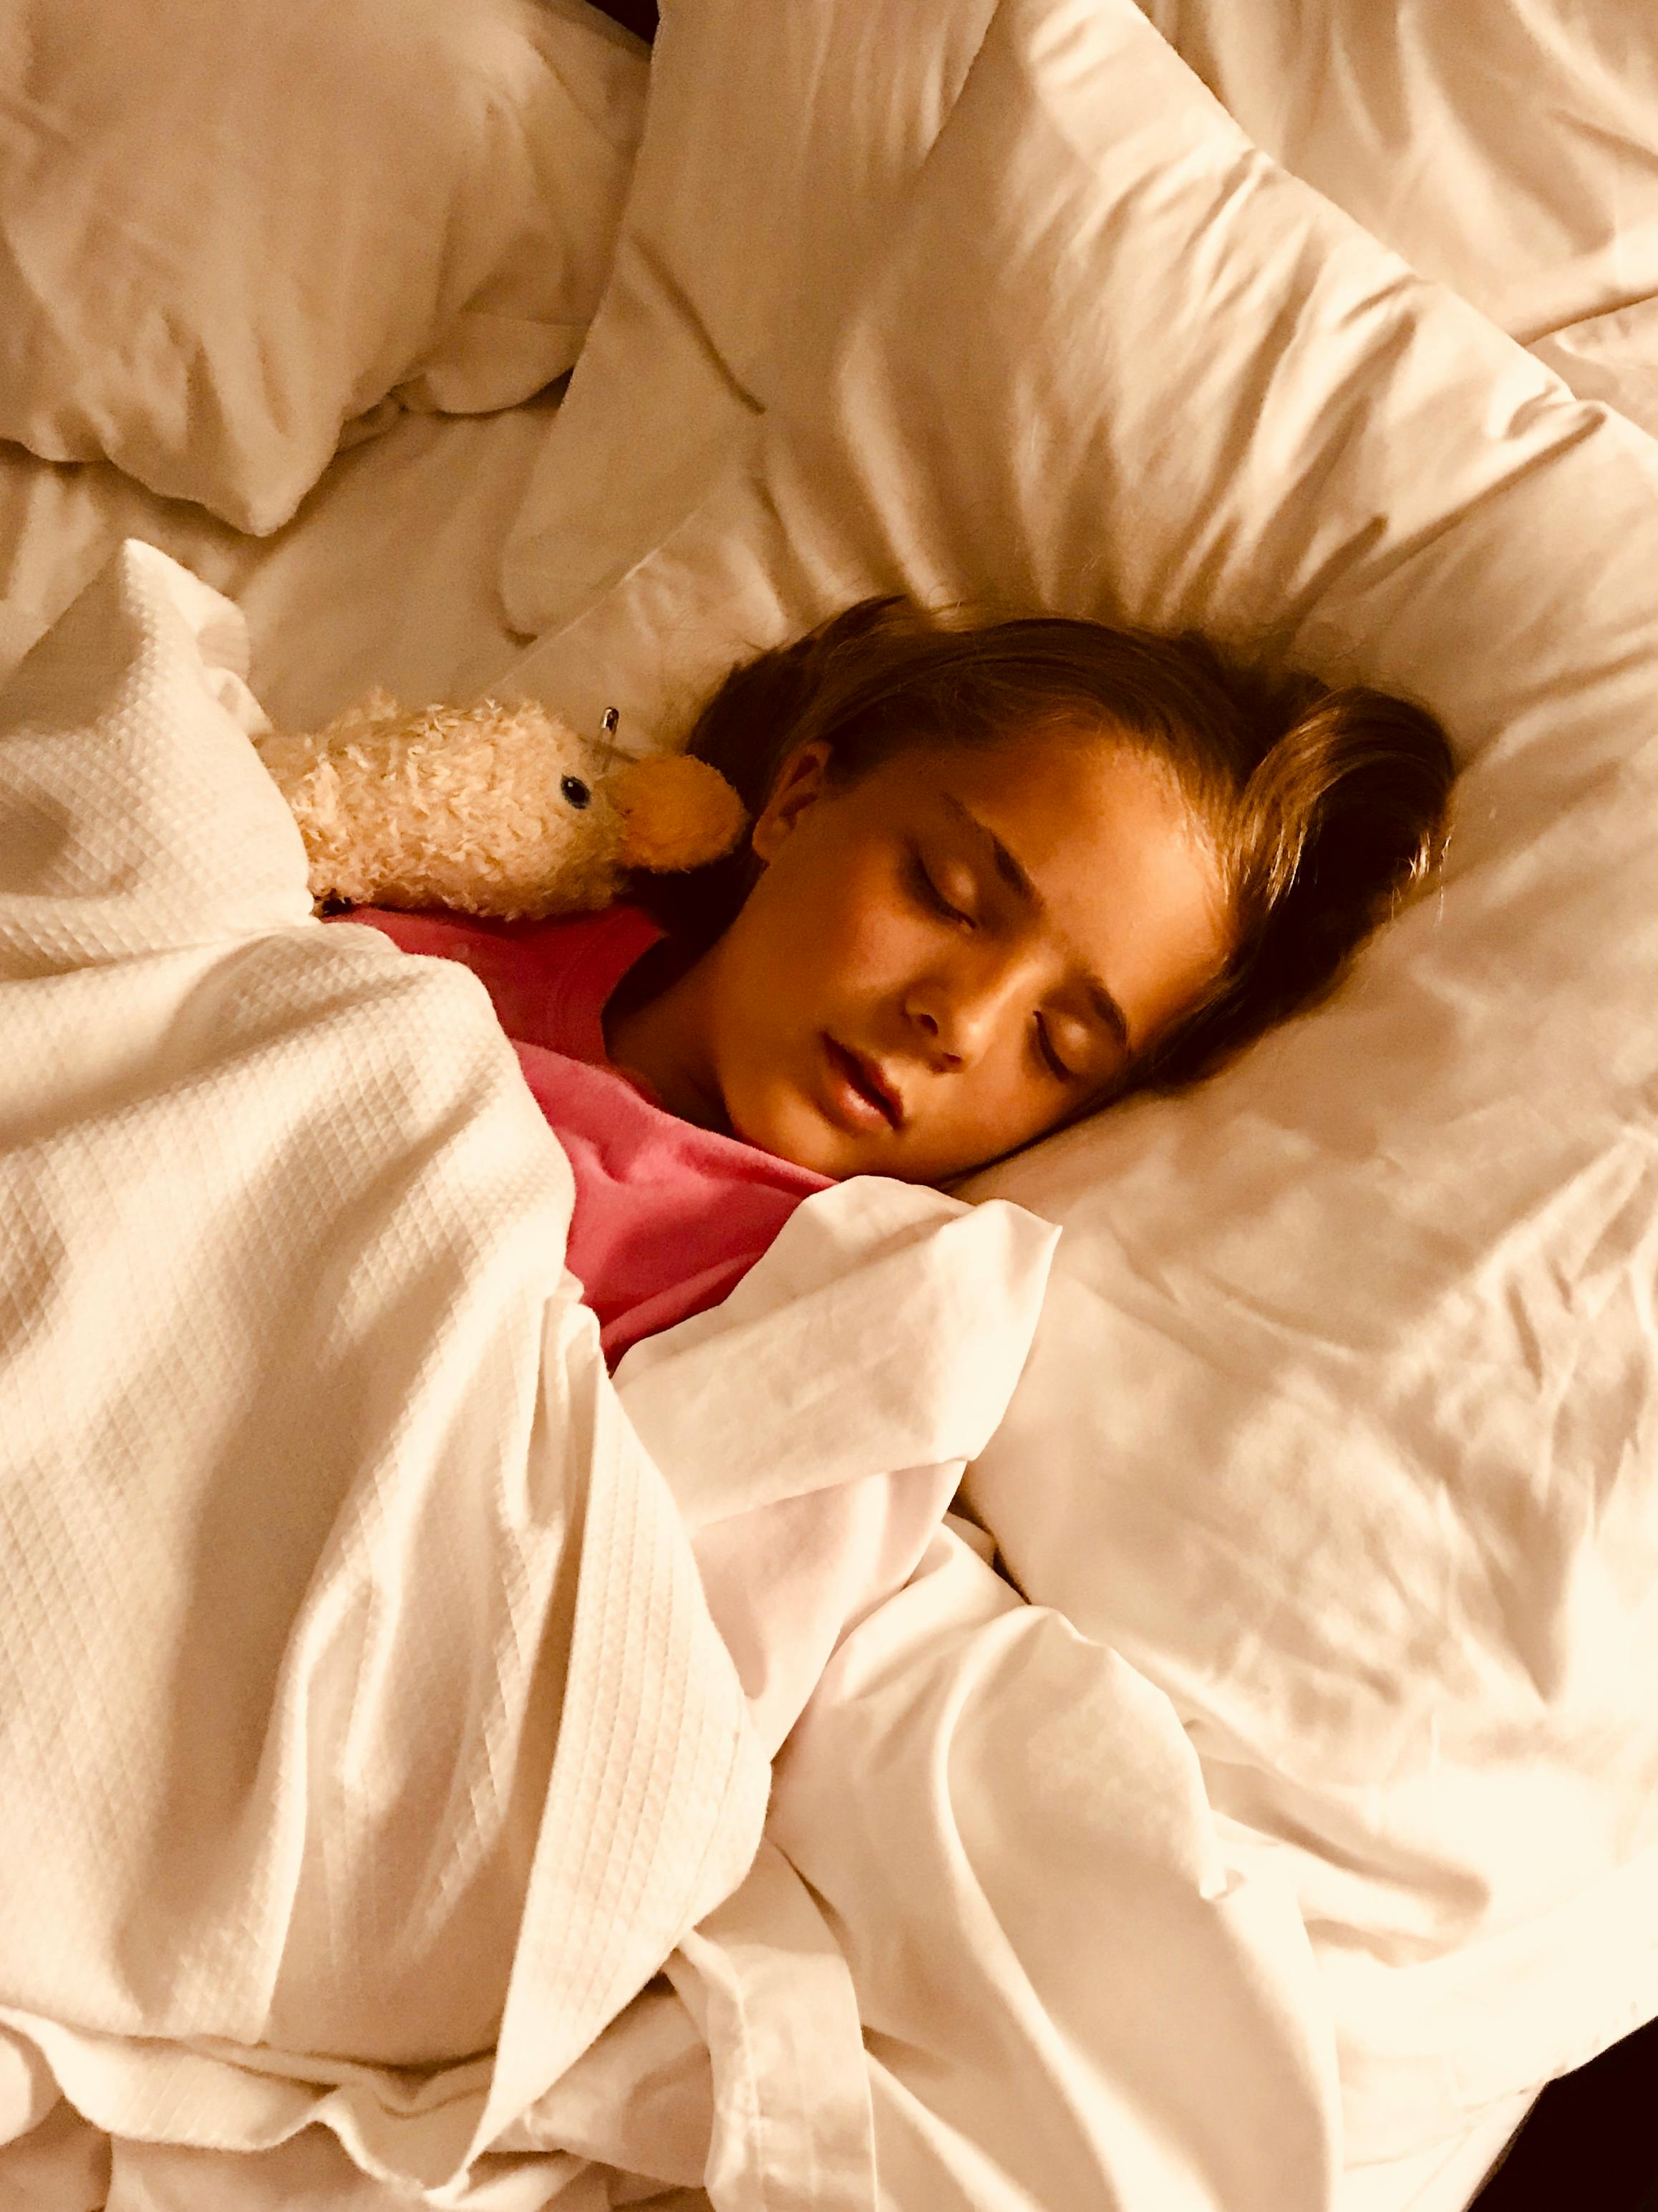 Girl Sleeping on Bed · Free Stock Photo